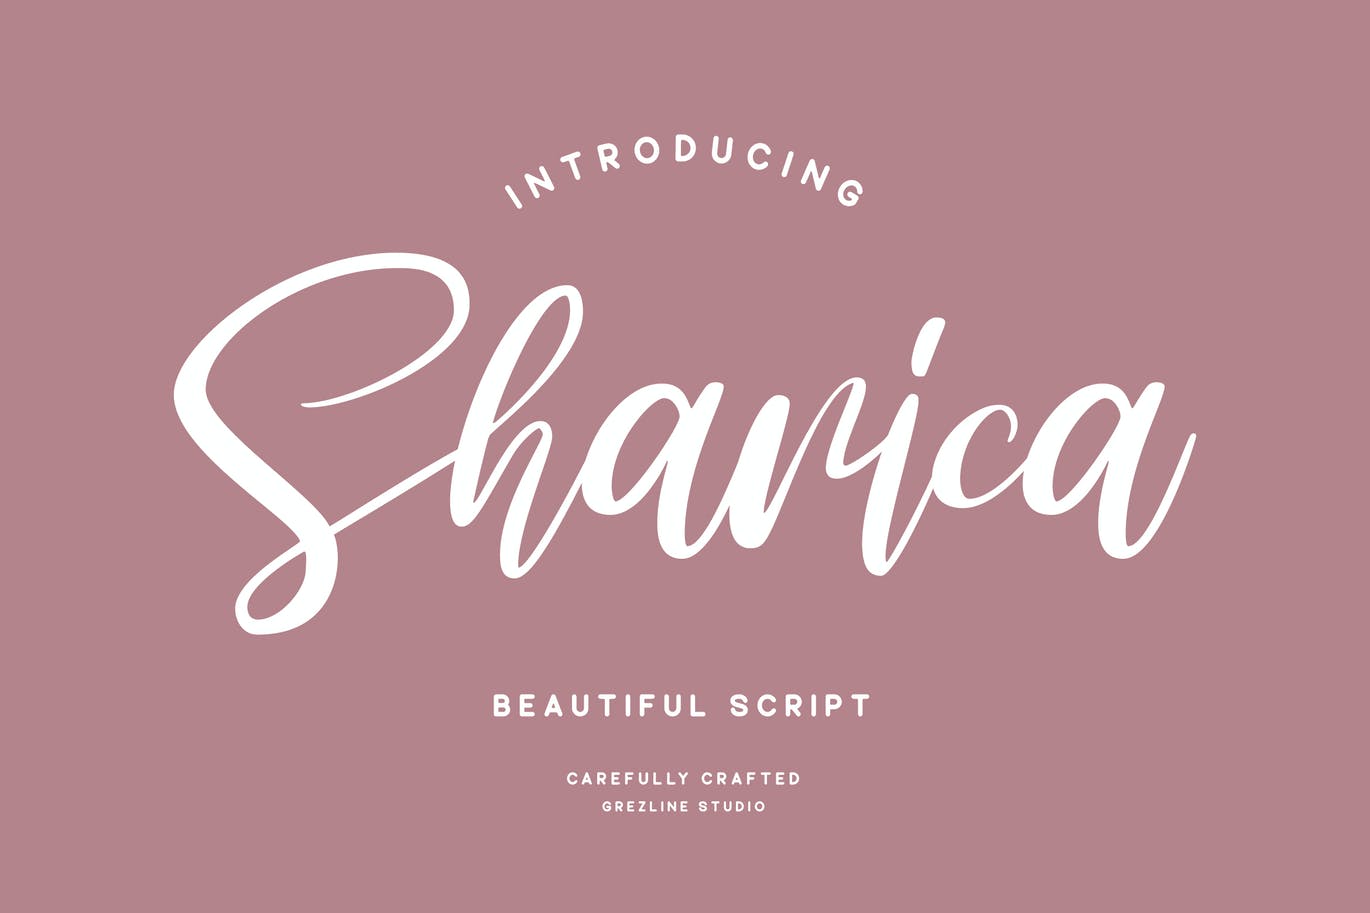 独特风格手绘脚本字体 Sharica Font 设计素材 第1张